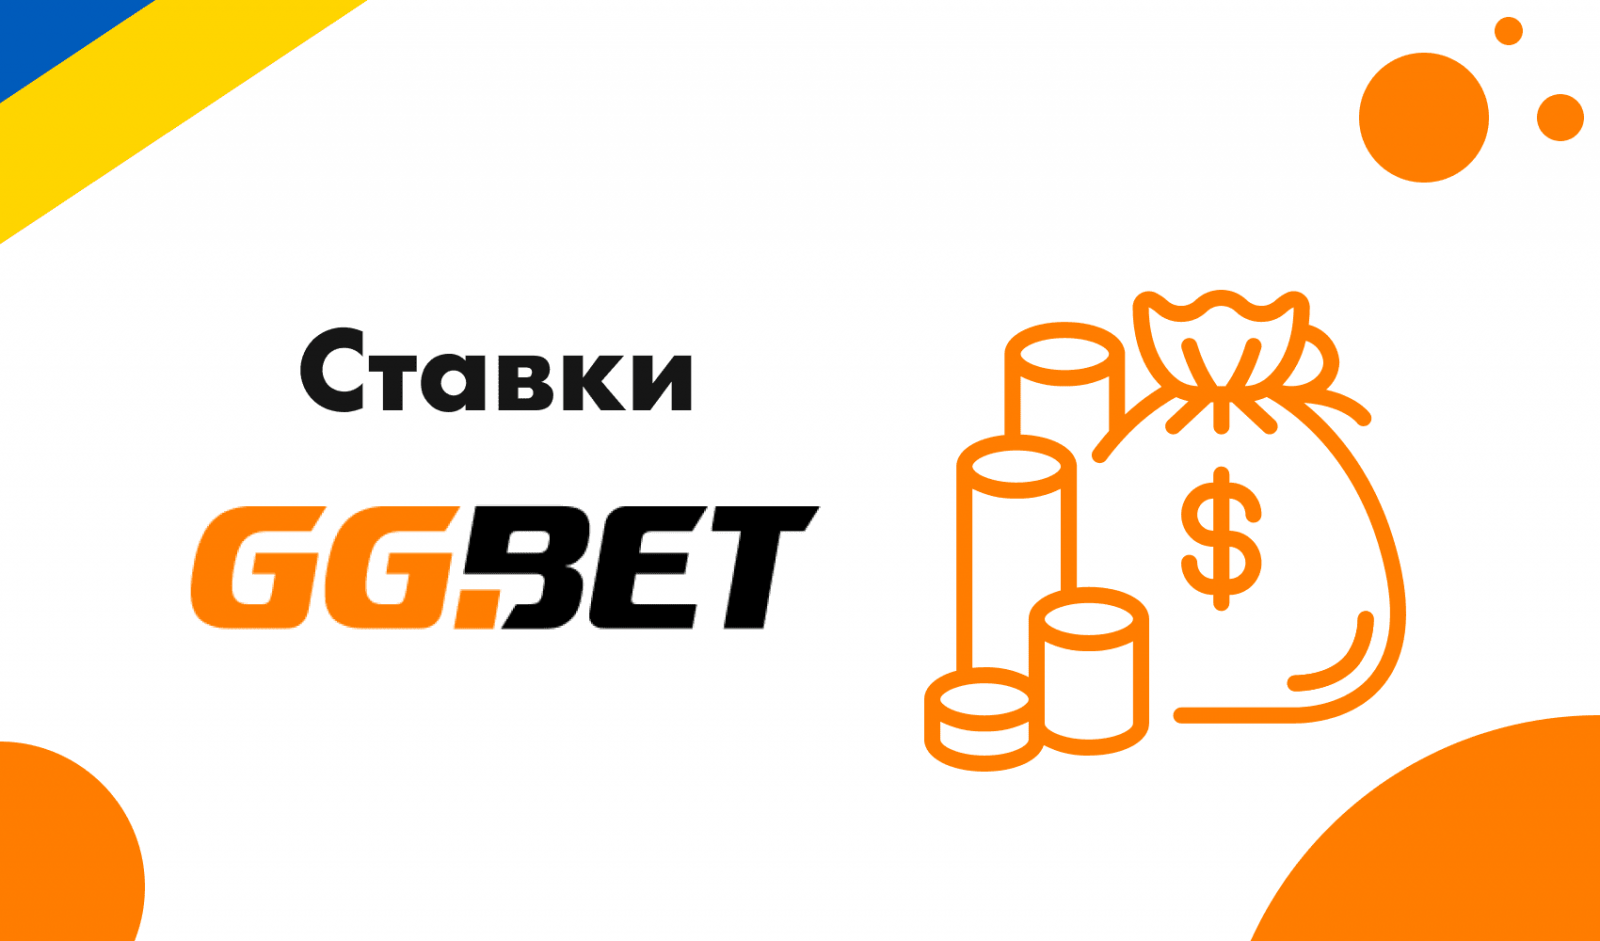 Ггбет регистрация ggbet bukmeker net ru. Ггбет. GGBET конкурсы. GGBET logo.